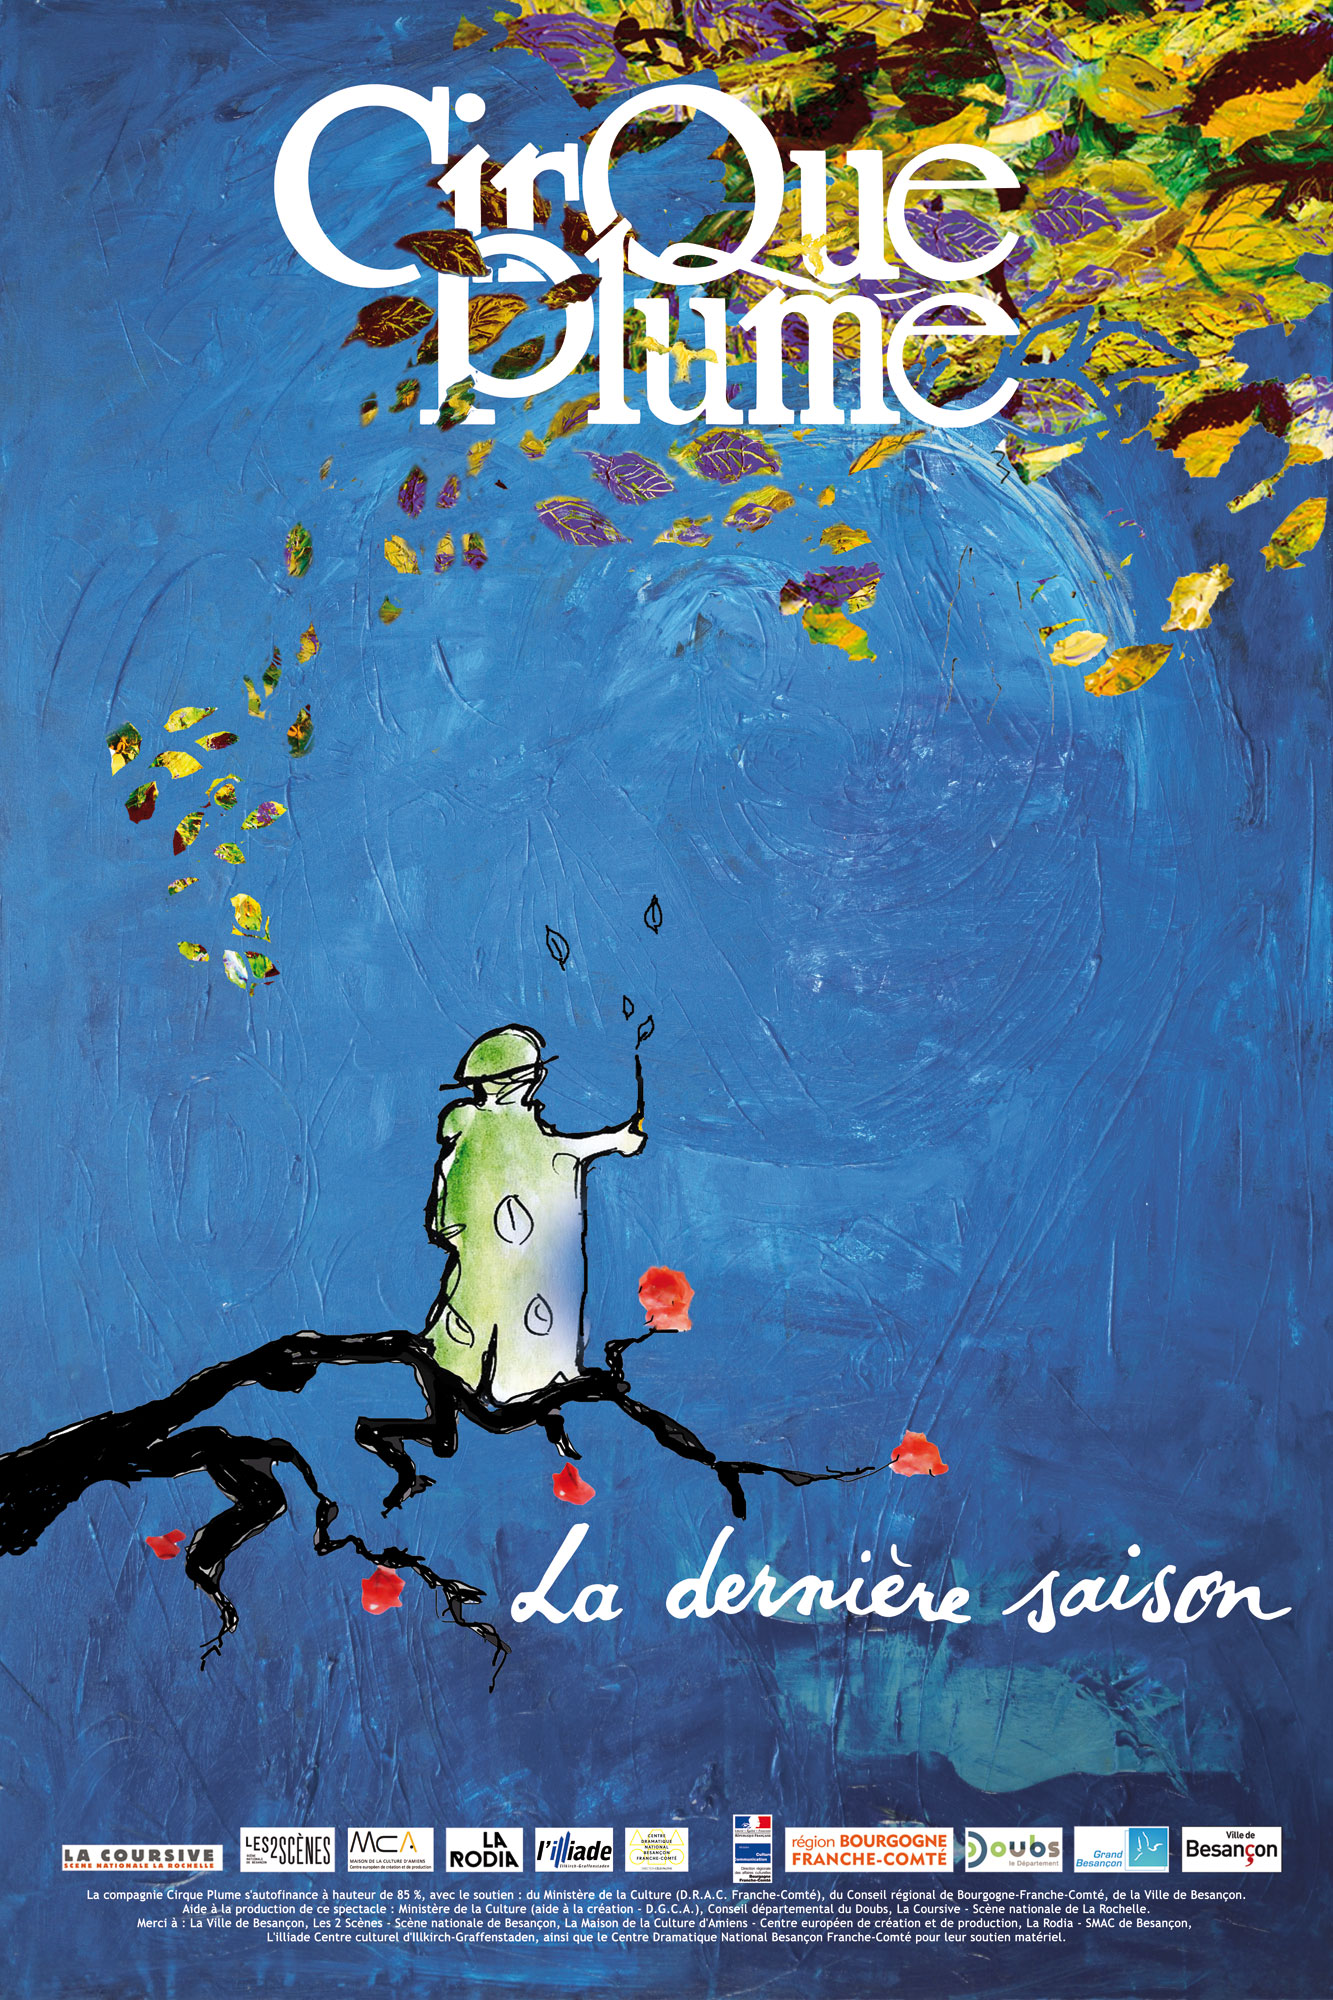 Poster of the show La dernière saison